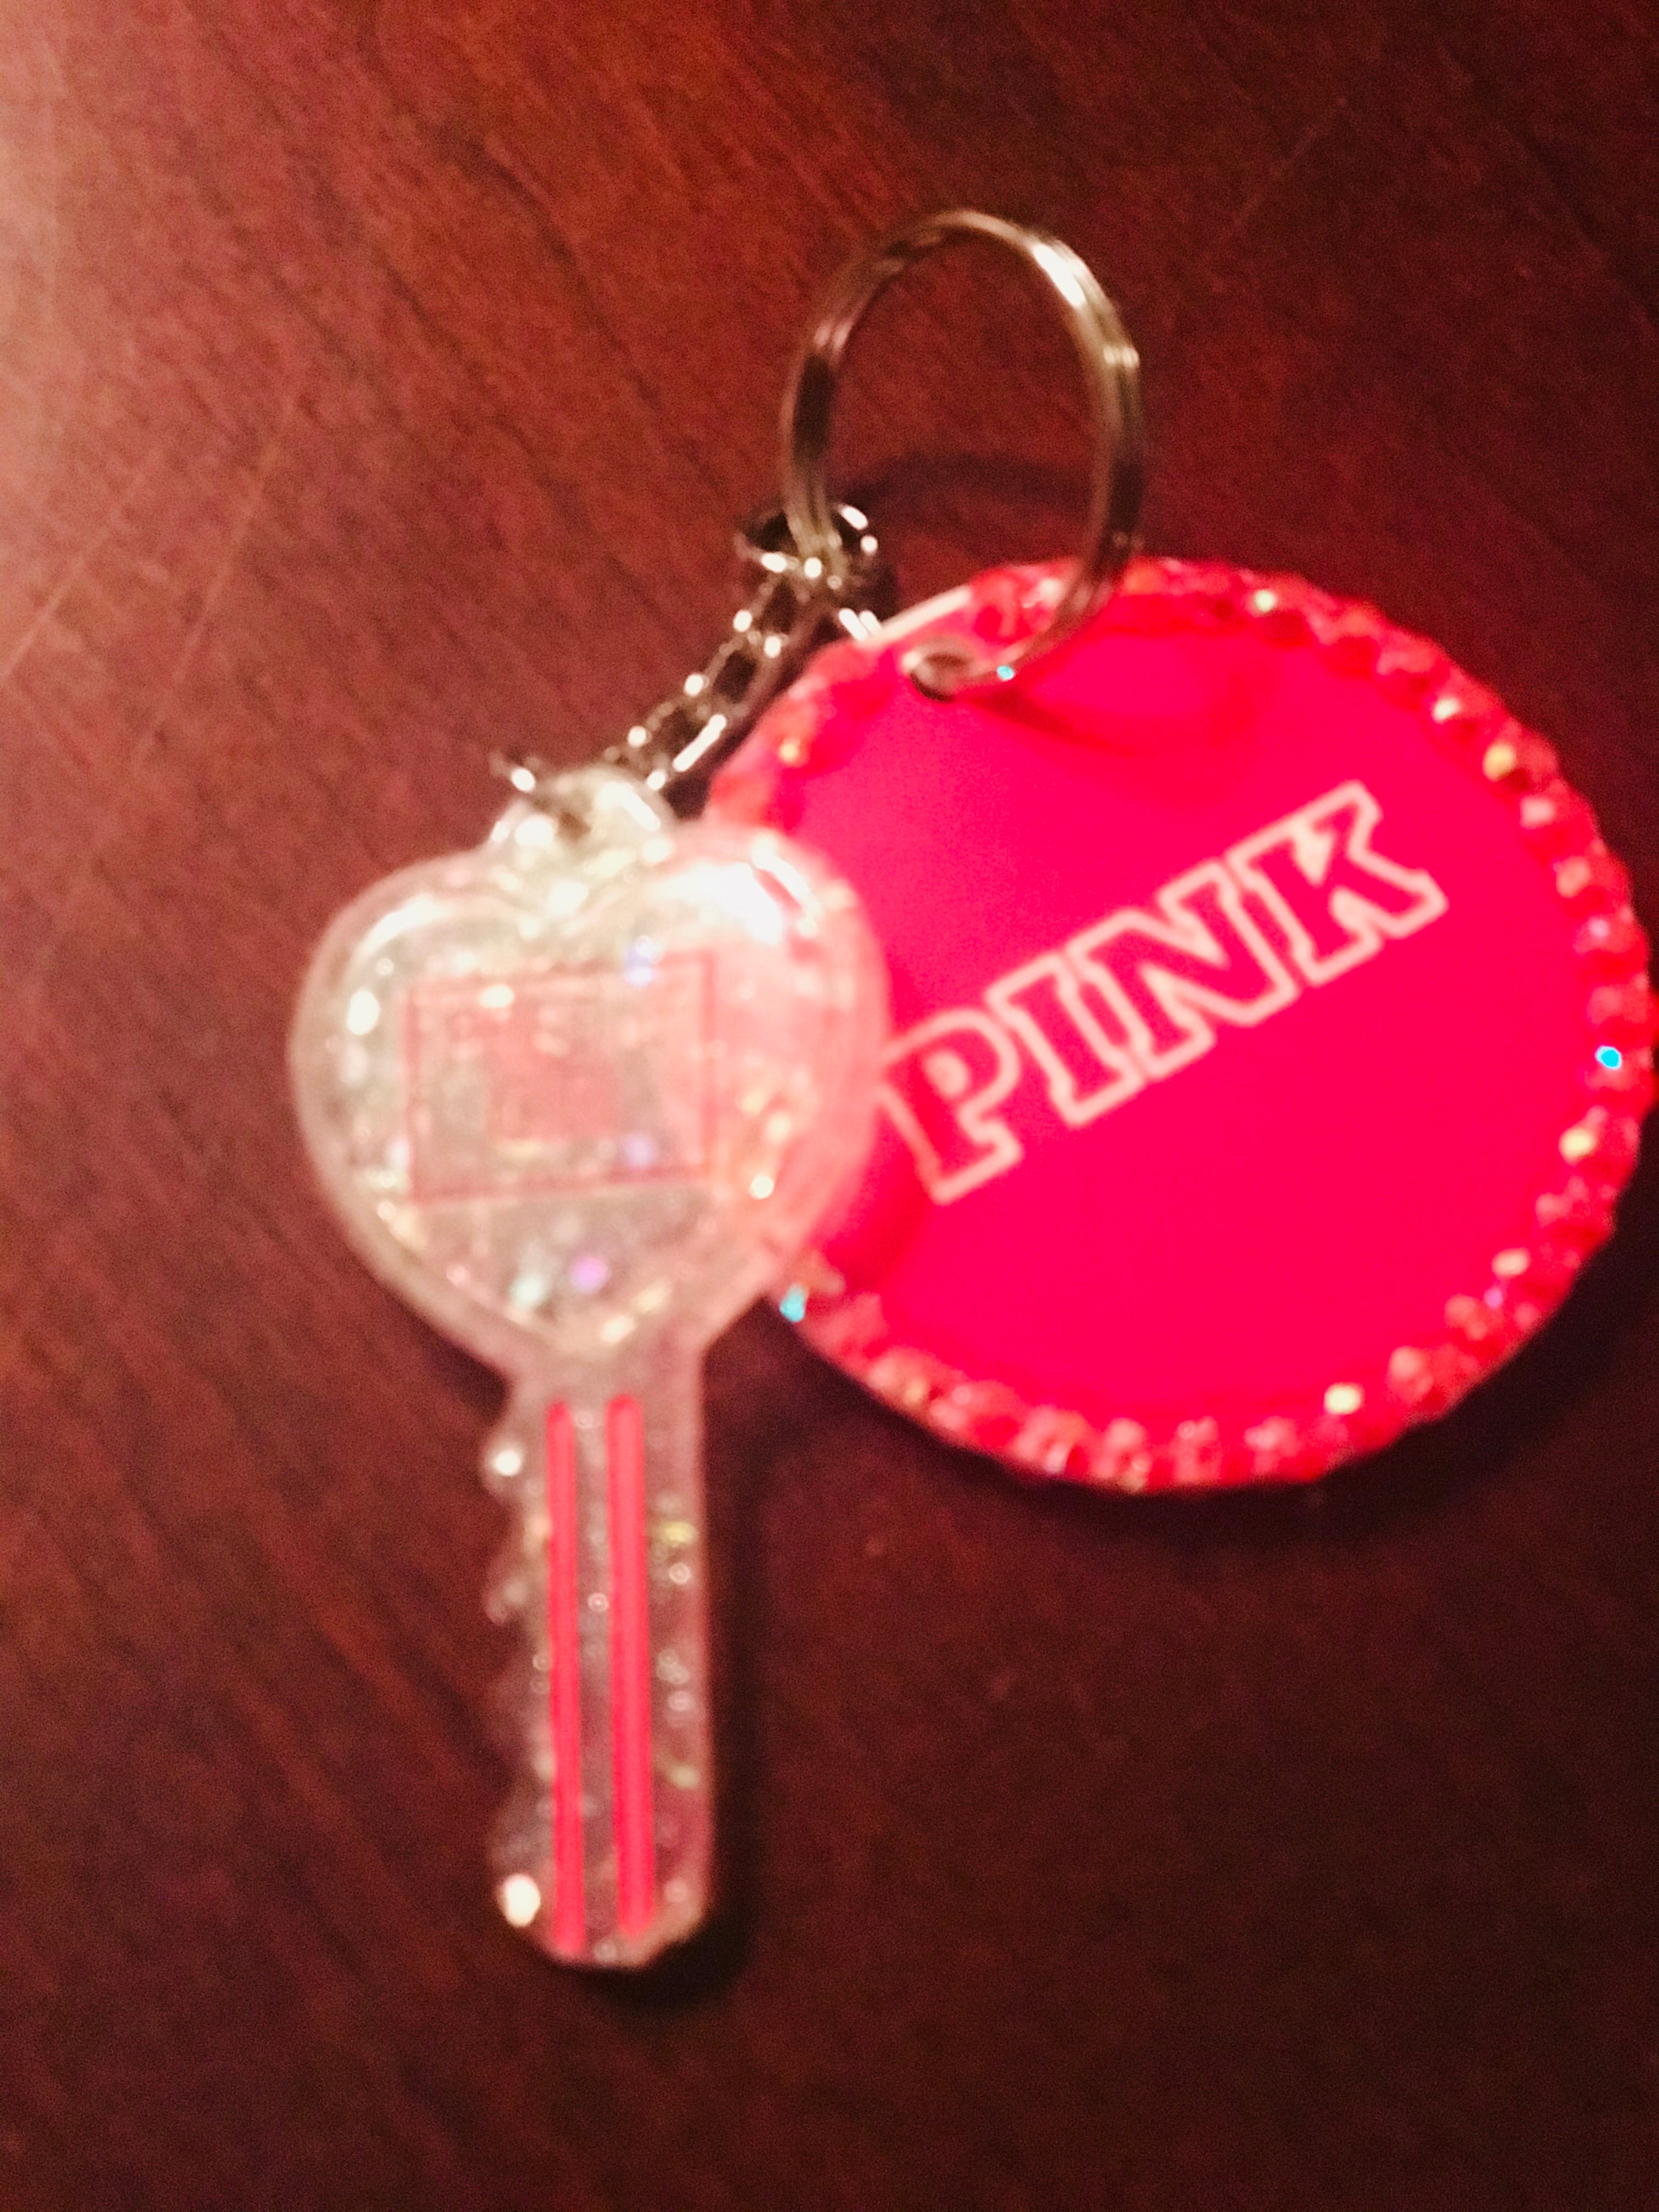 PINK Keychain with key charm